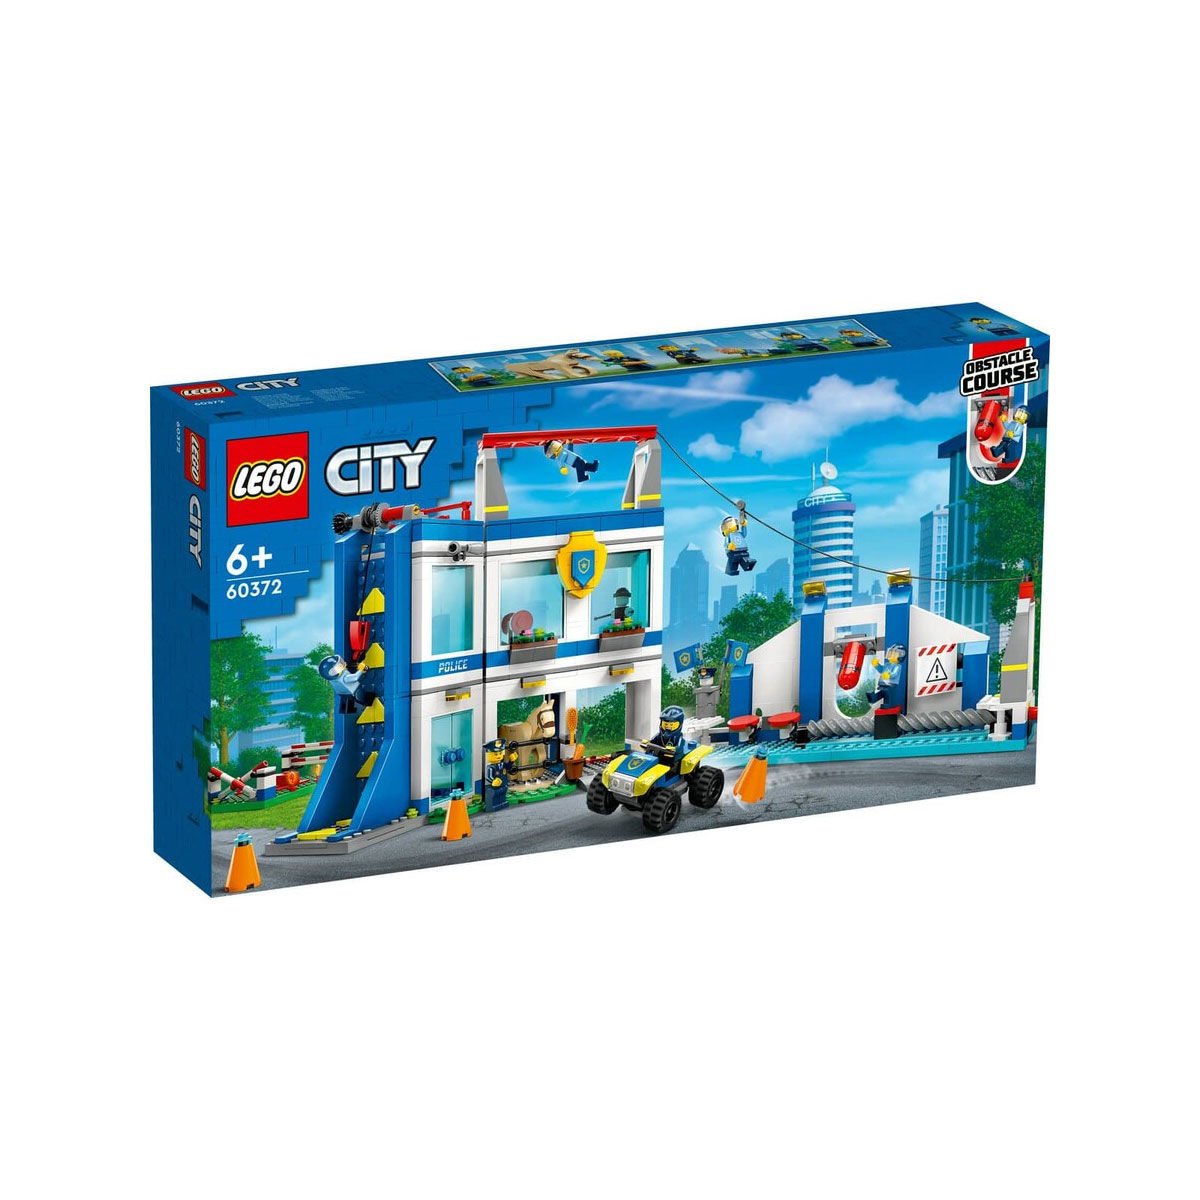 60372 LEGO® City Polis Eğitim Akademisi 823 parça +6 yaş